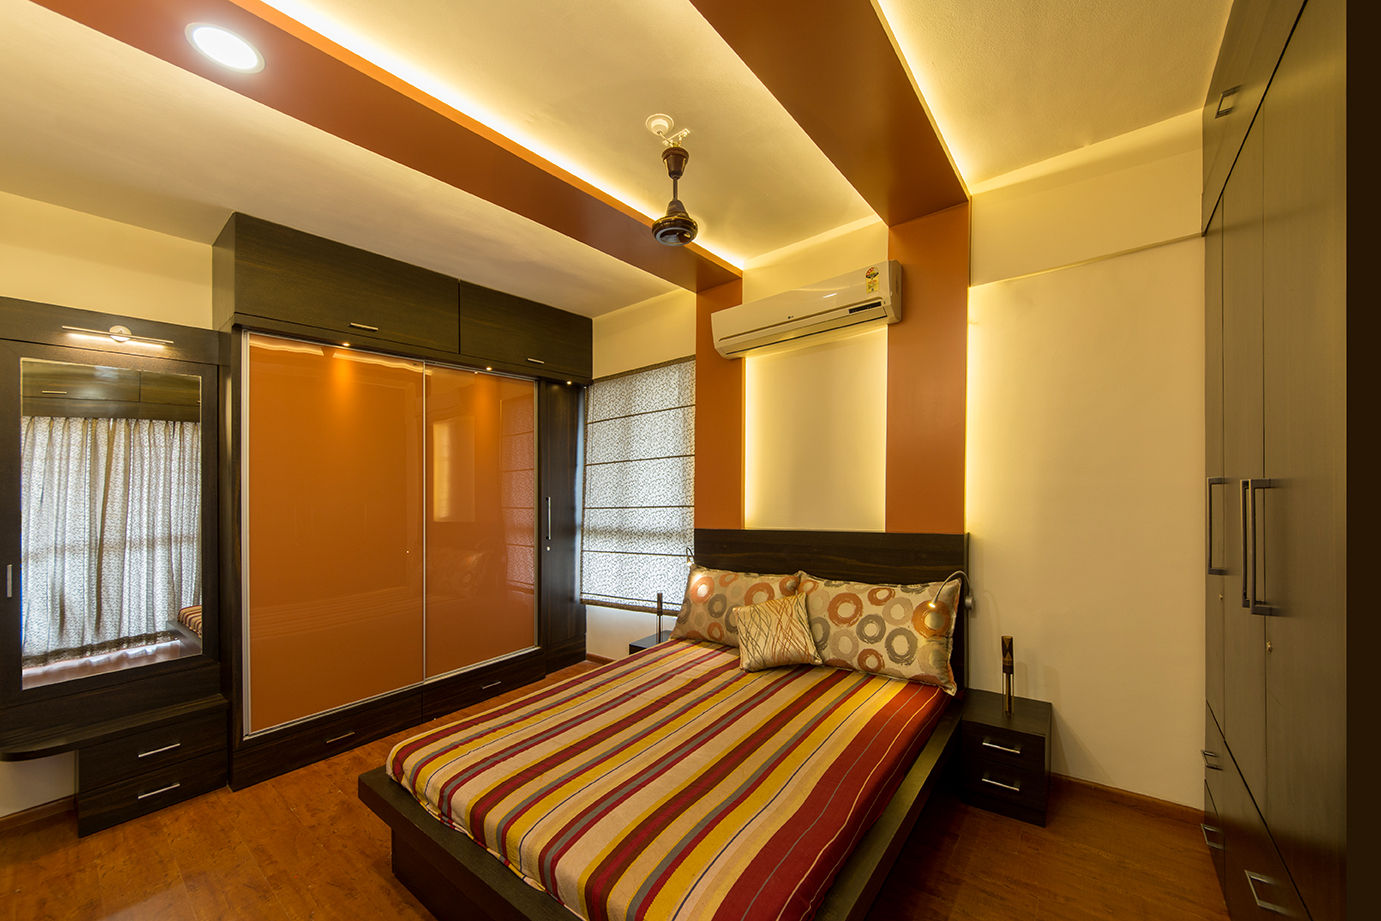 Home at Vishrantwadi, Navmiti Designs Navmiti Designs Paredes y pisos de estilo moderno